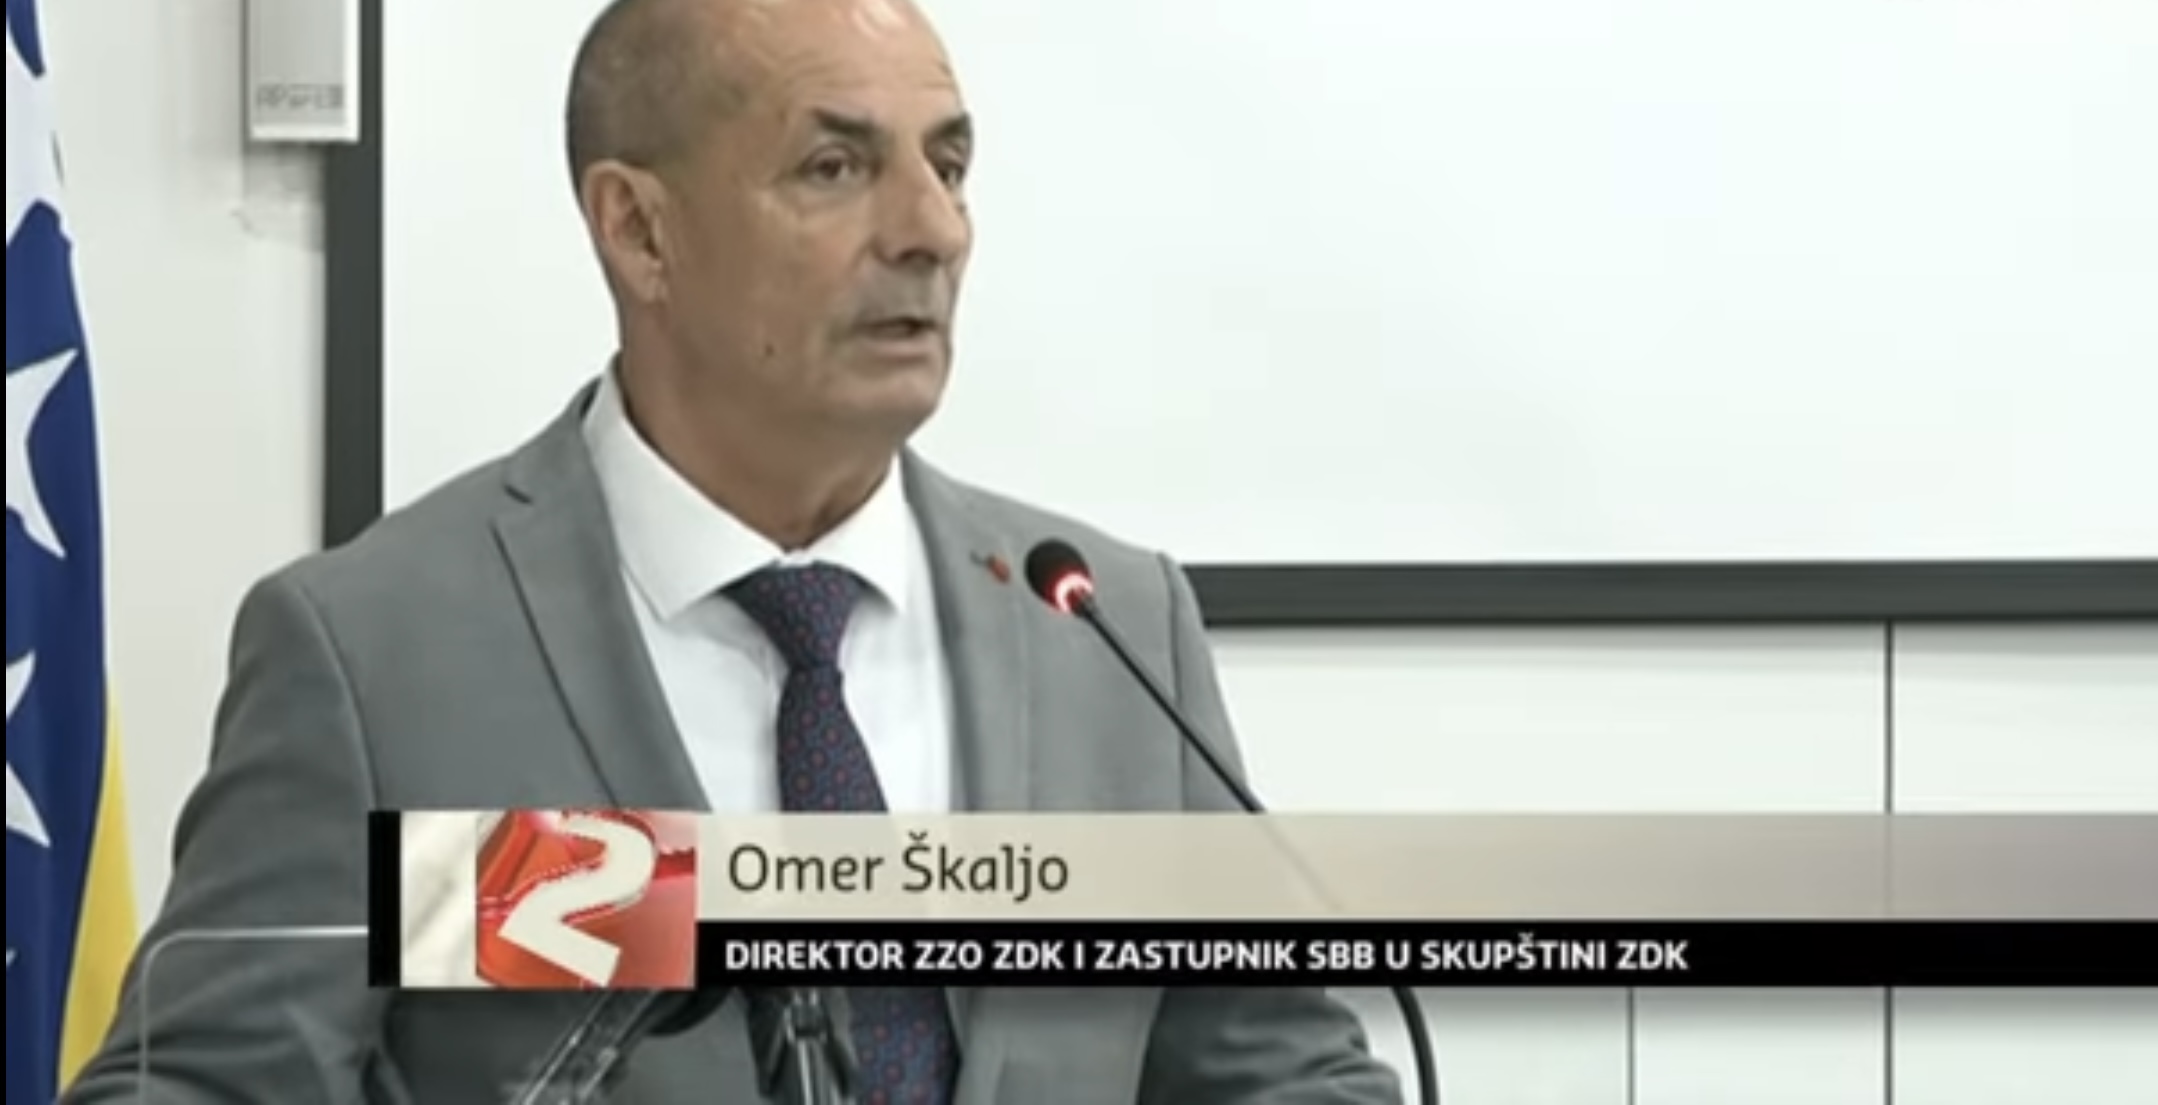 VIDEO / Zbog Omera Škalje pada Vlada ZDK?